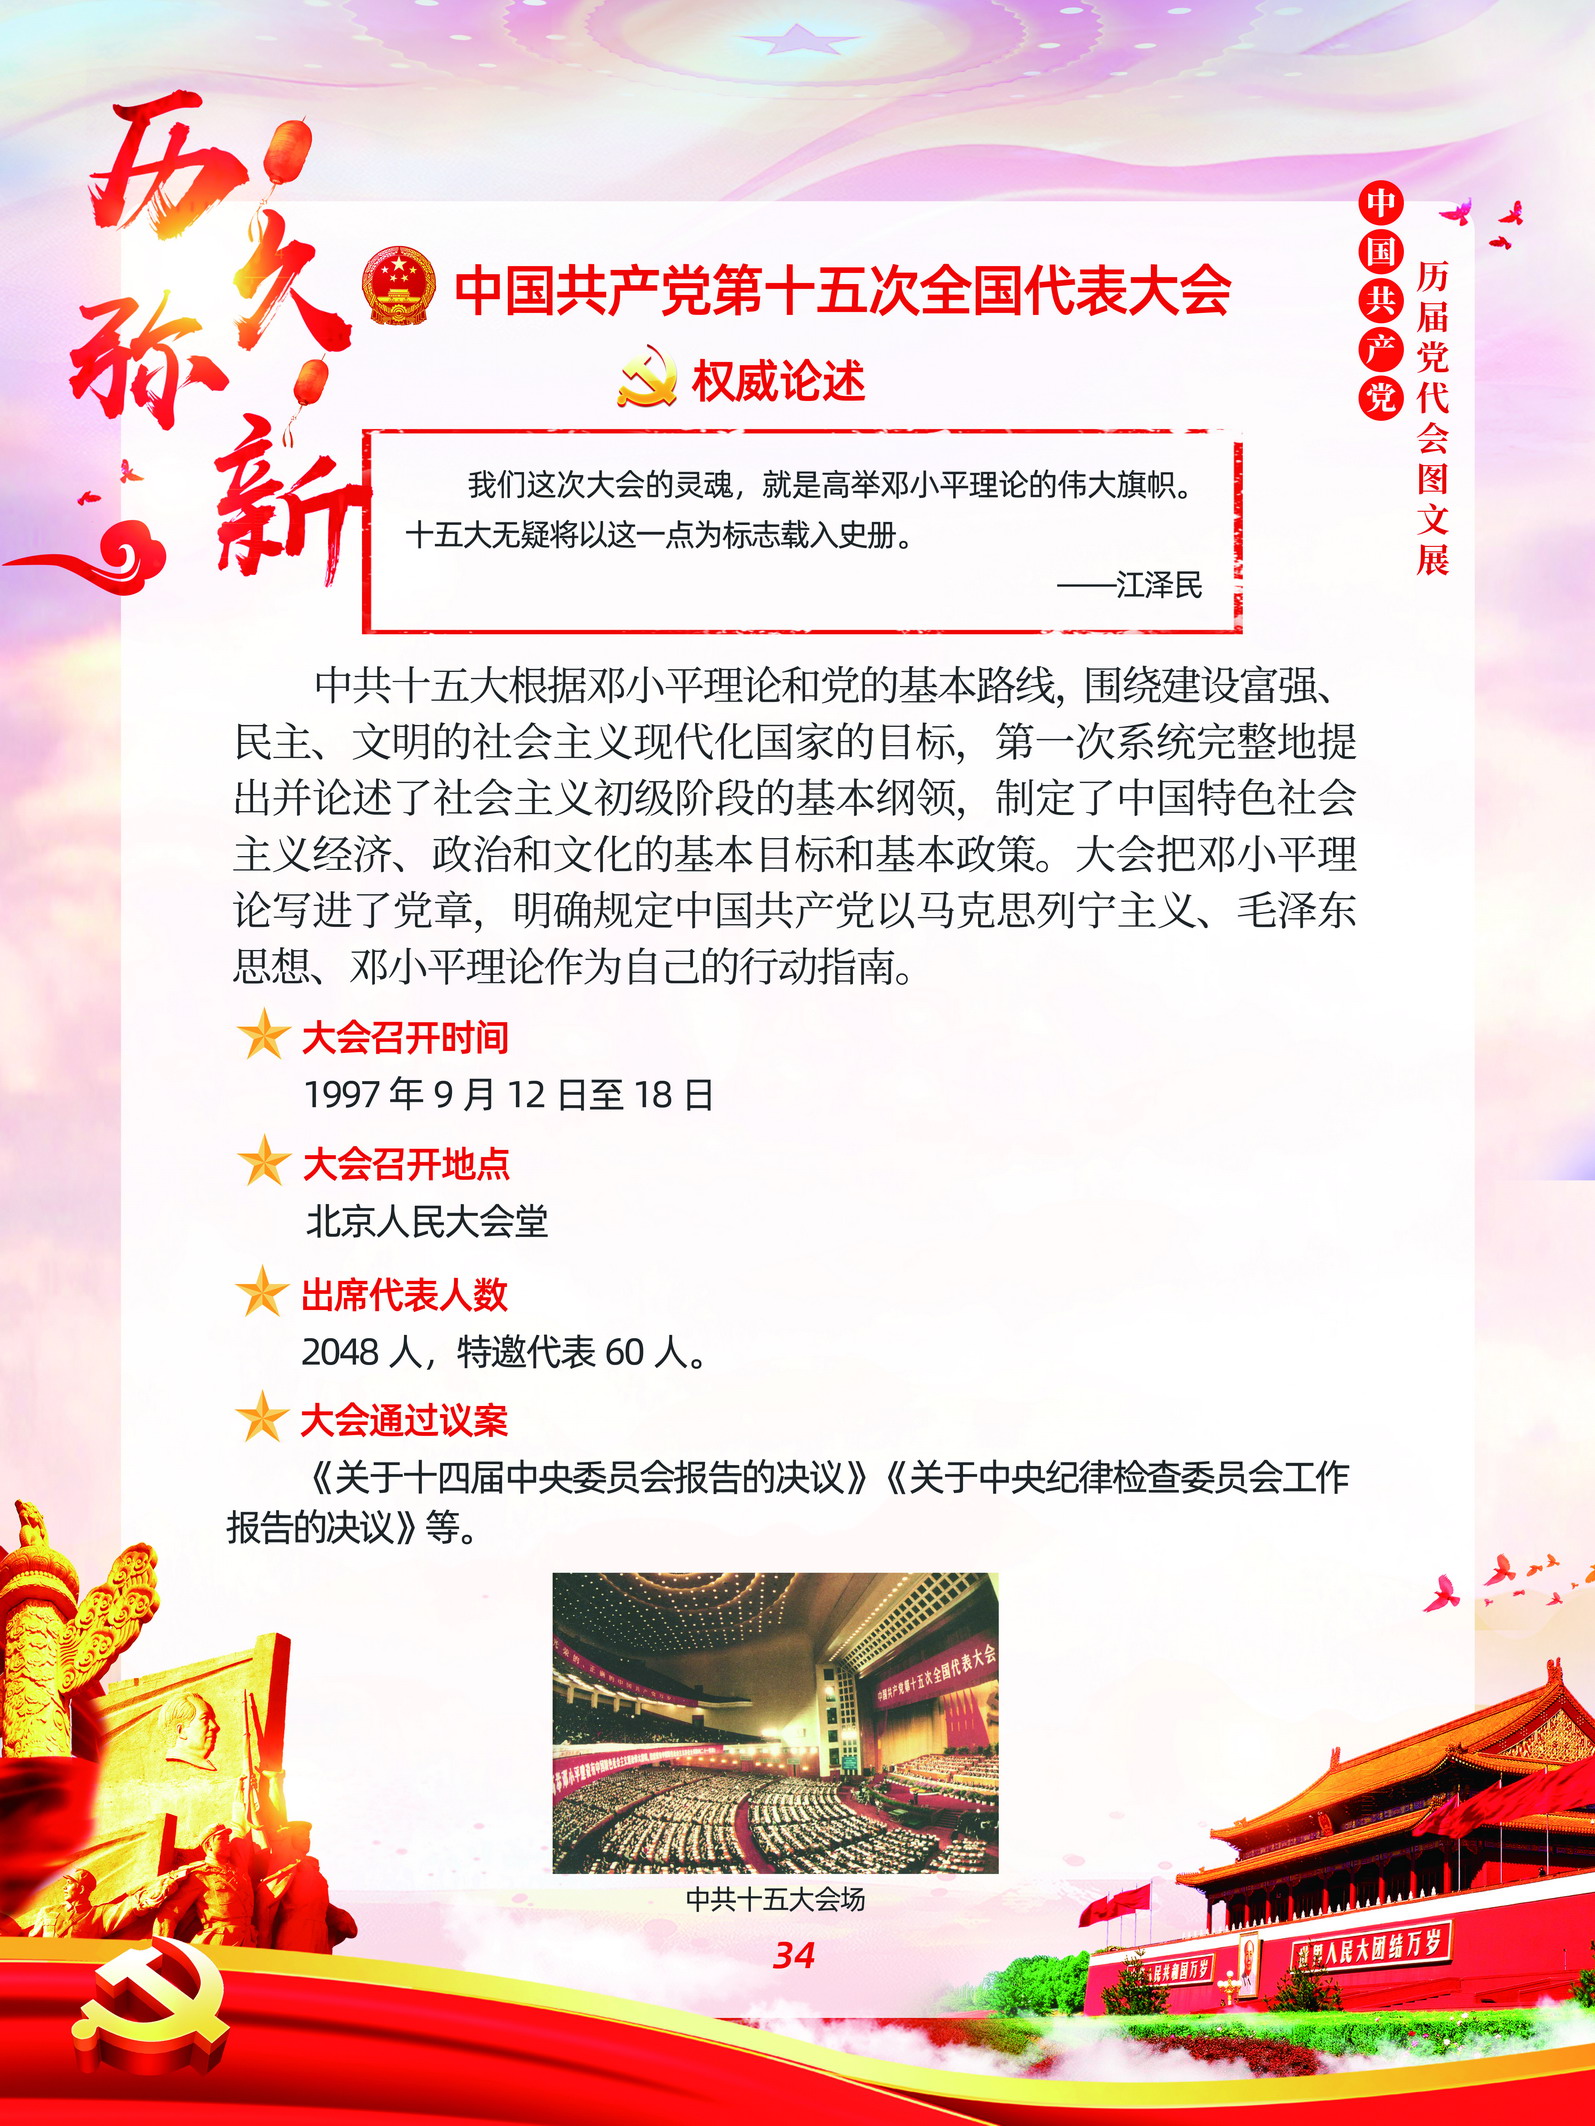 中国共产党历届党代会图文展_图33